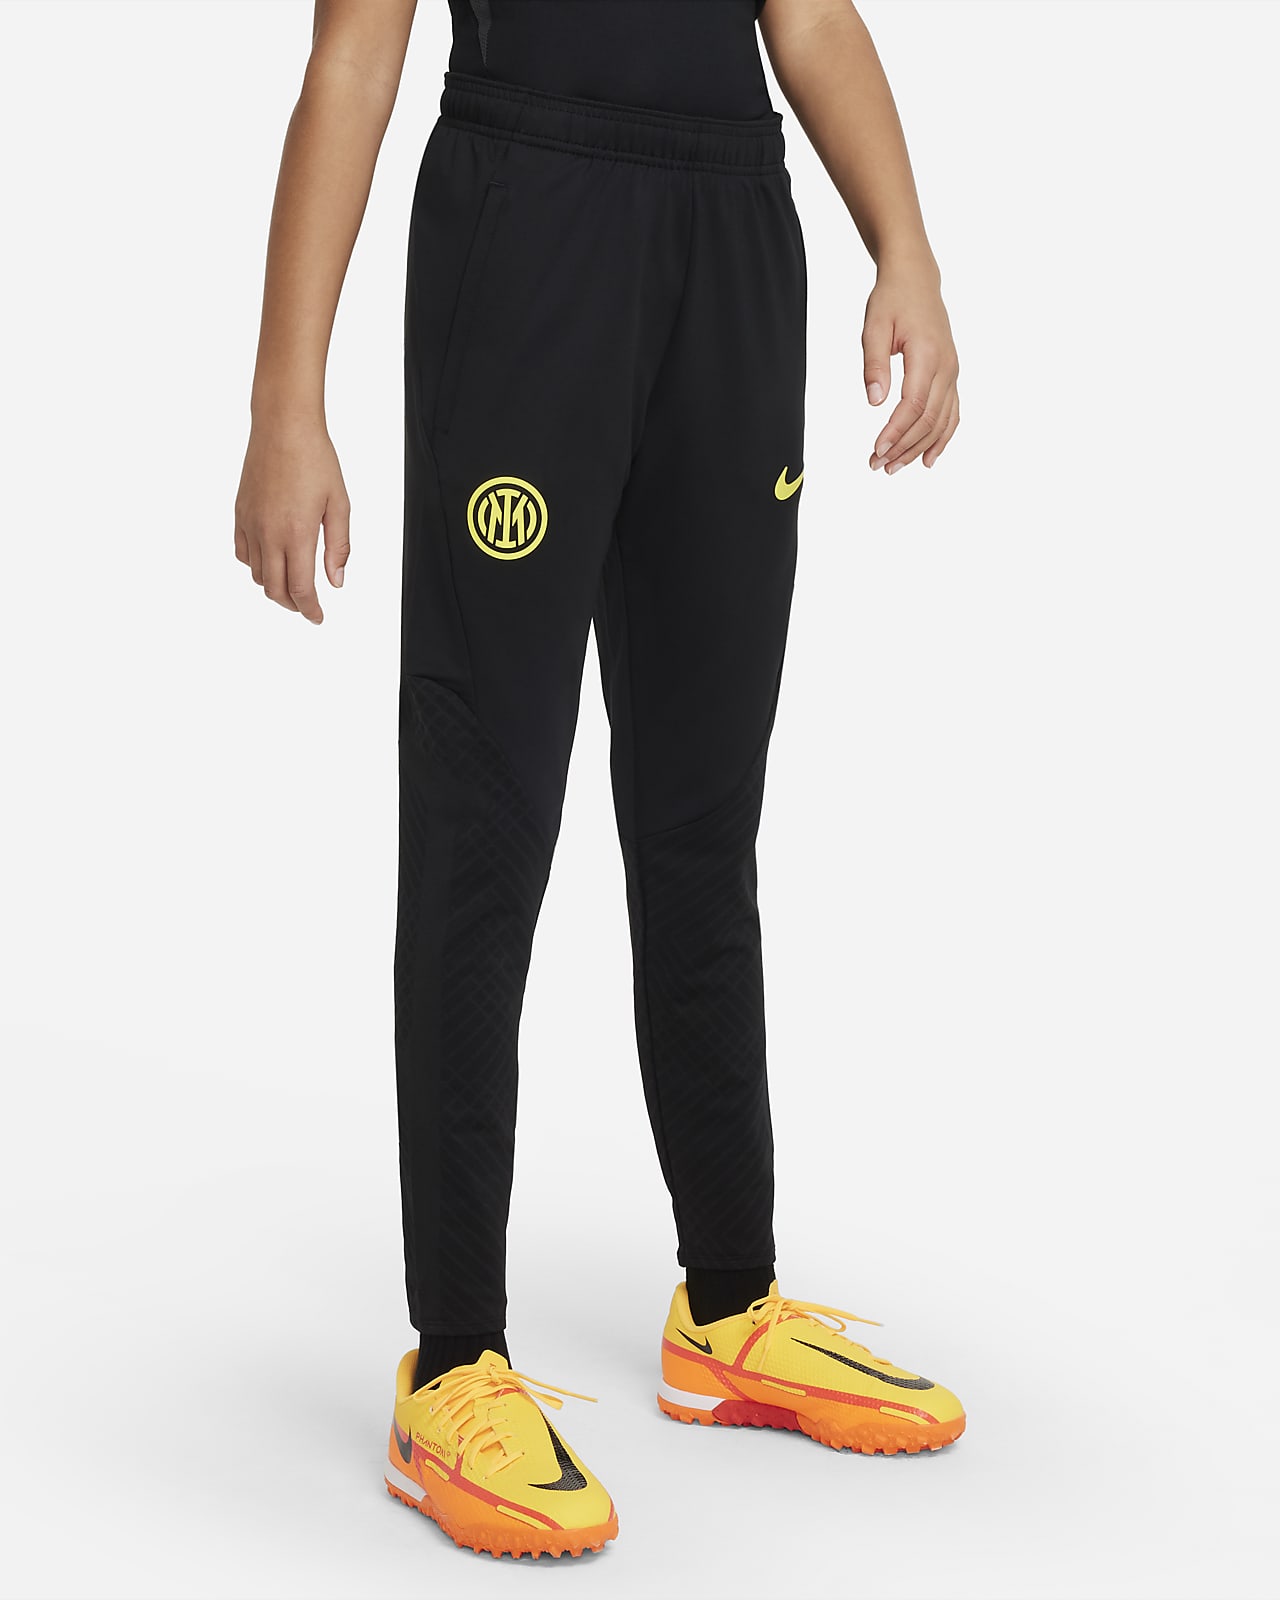 Inter Milan Nike Knit Football Pants. Nike LU